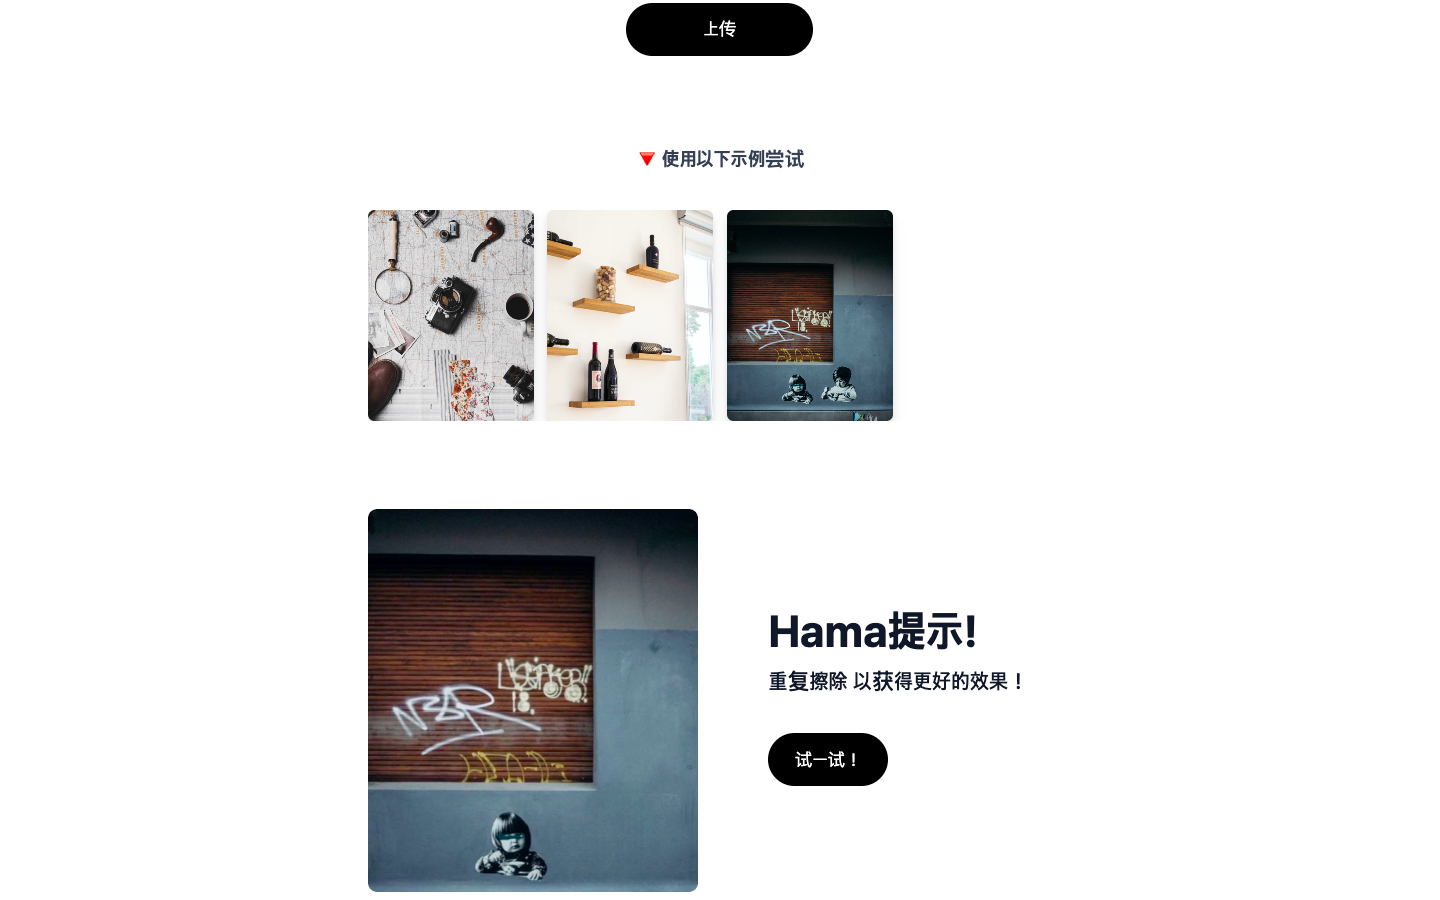 Hama AI图像橡皮擦